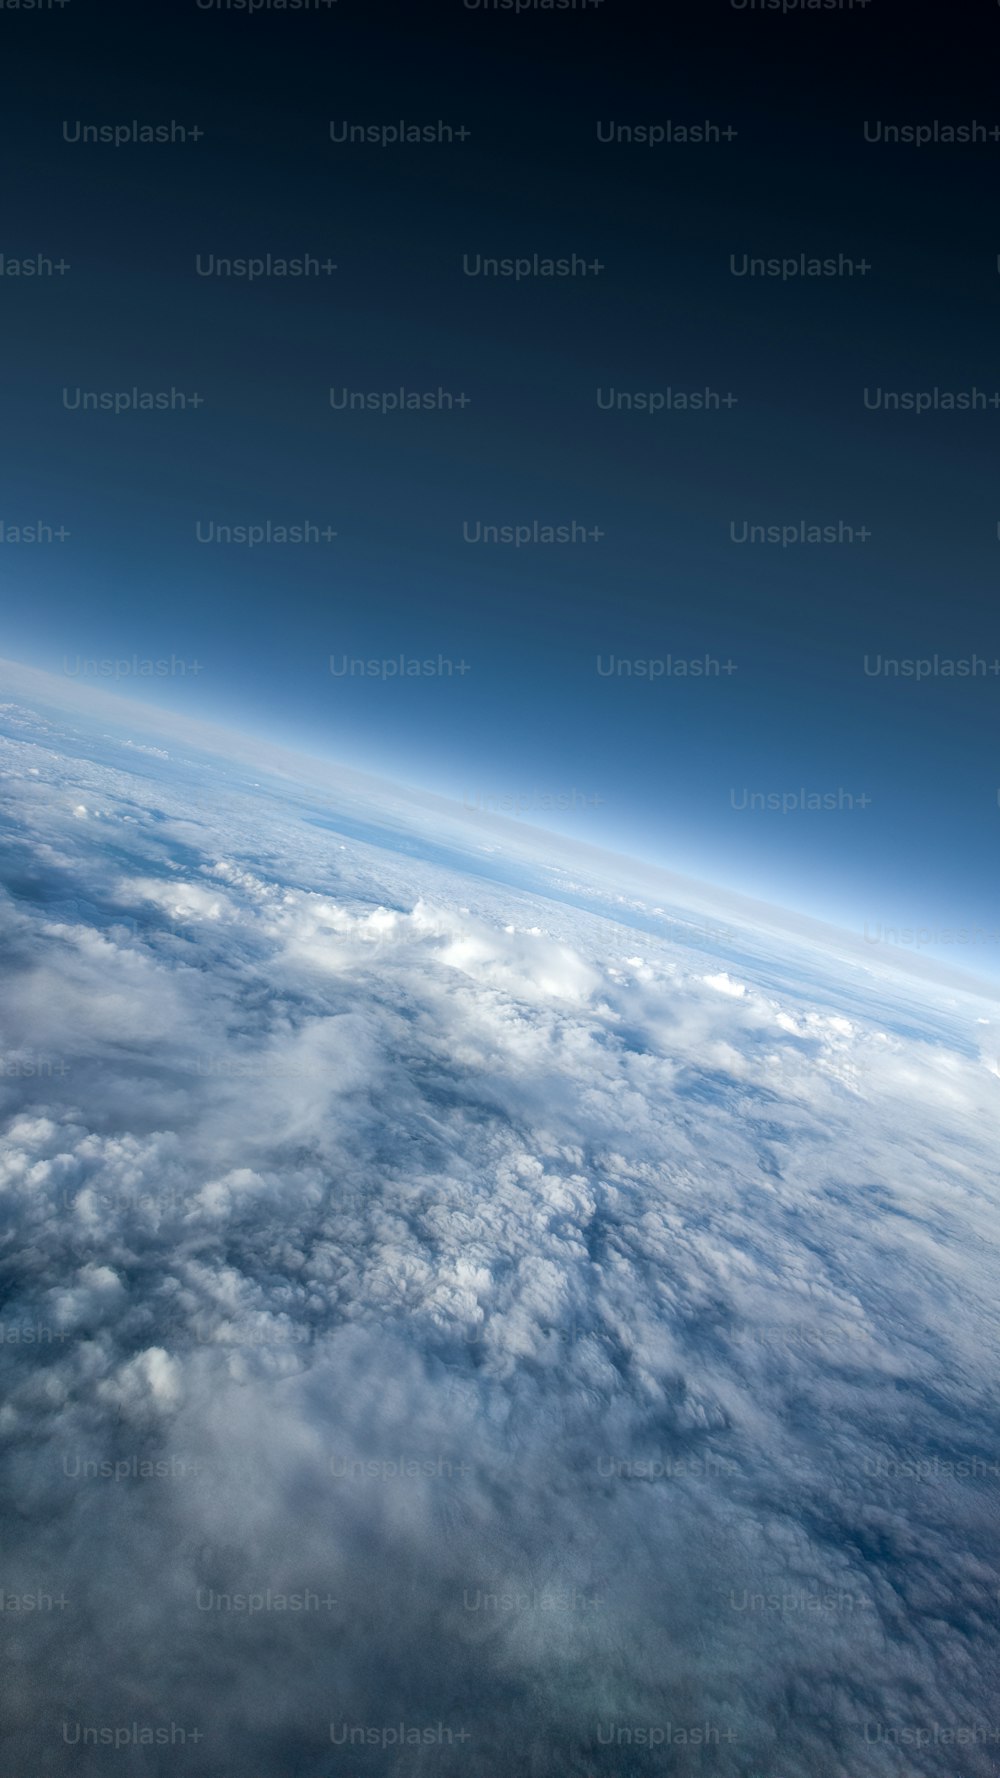 スペースシャトルからの地球の眺め